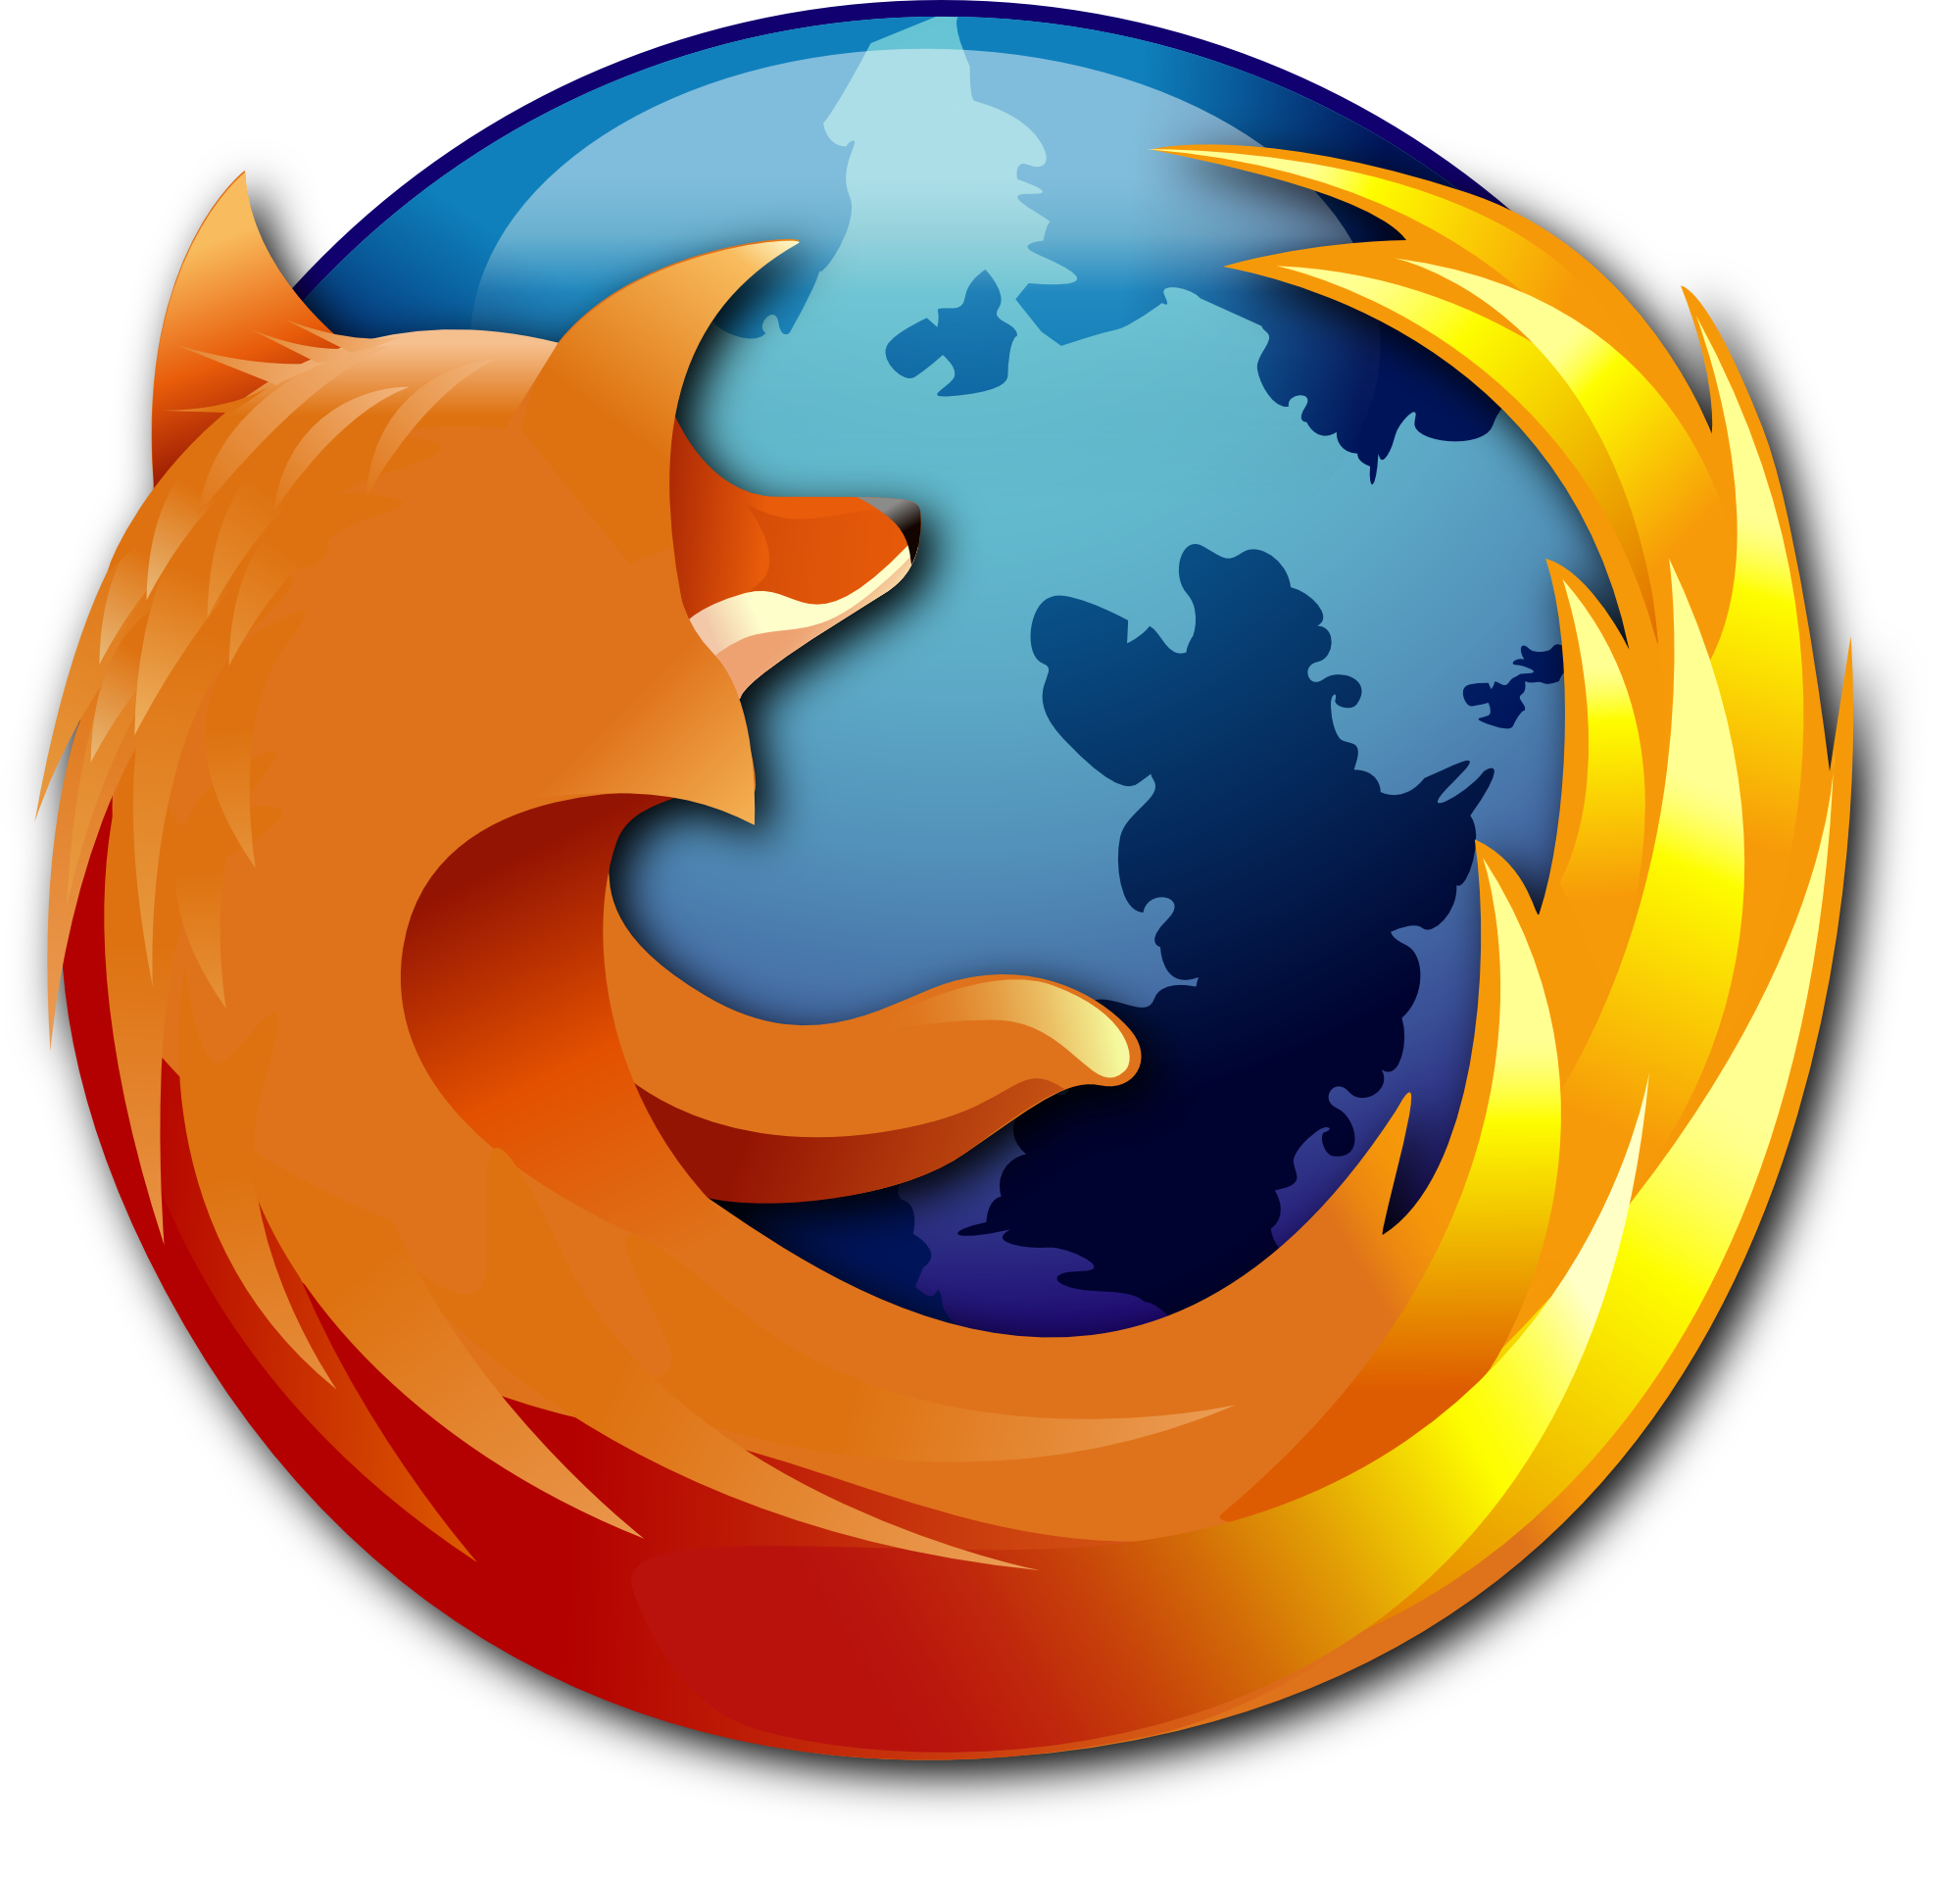 Firefox logo failed to load